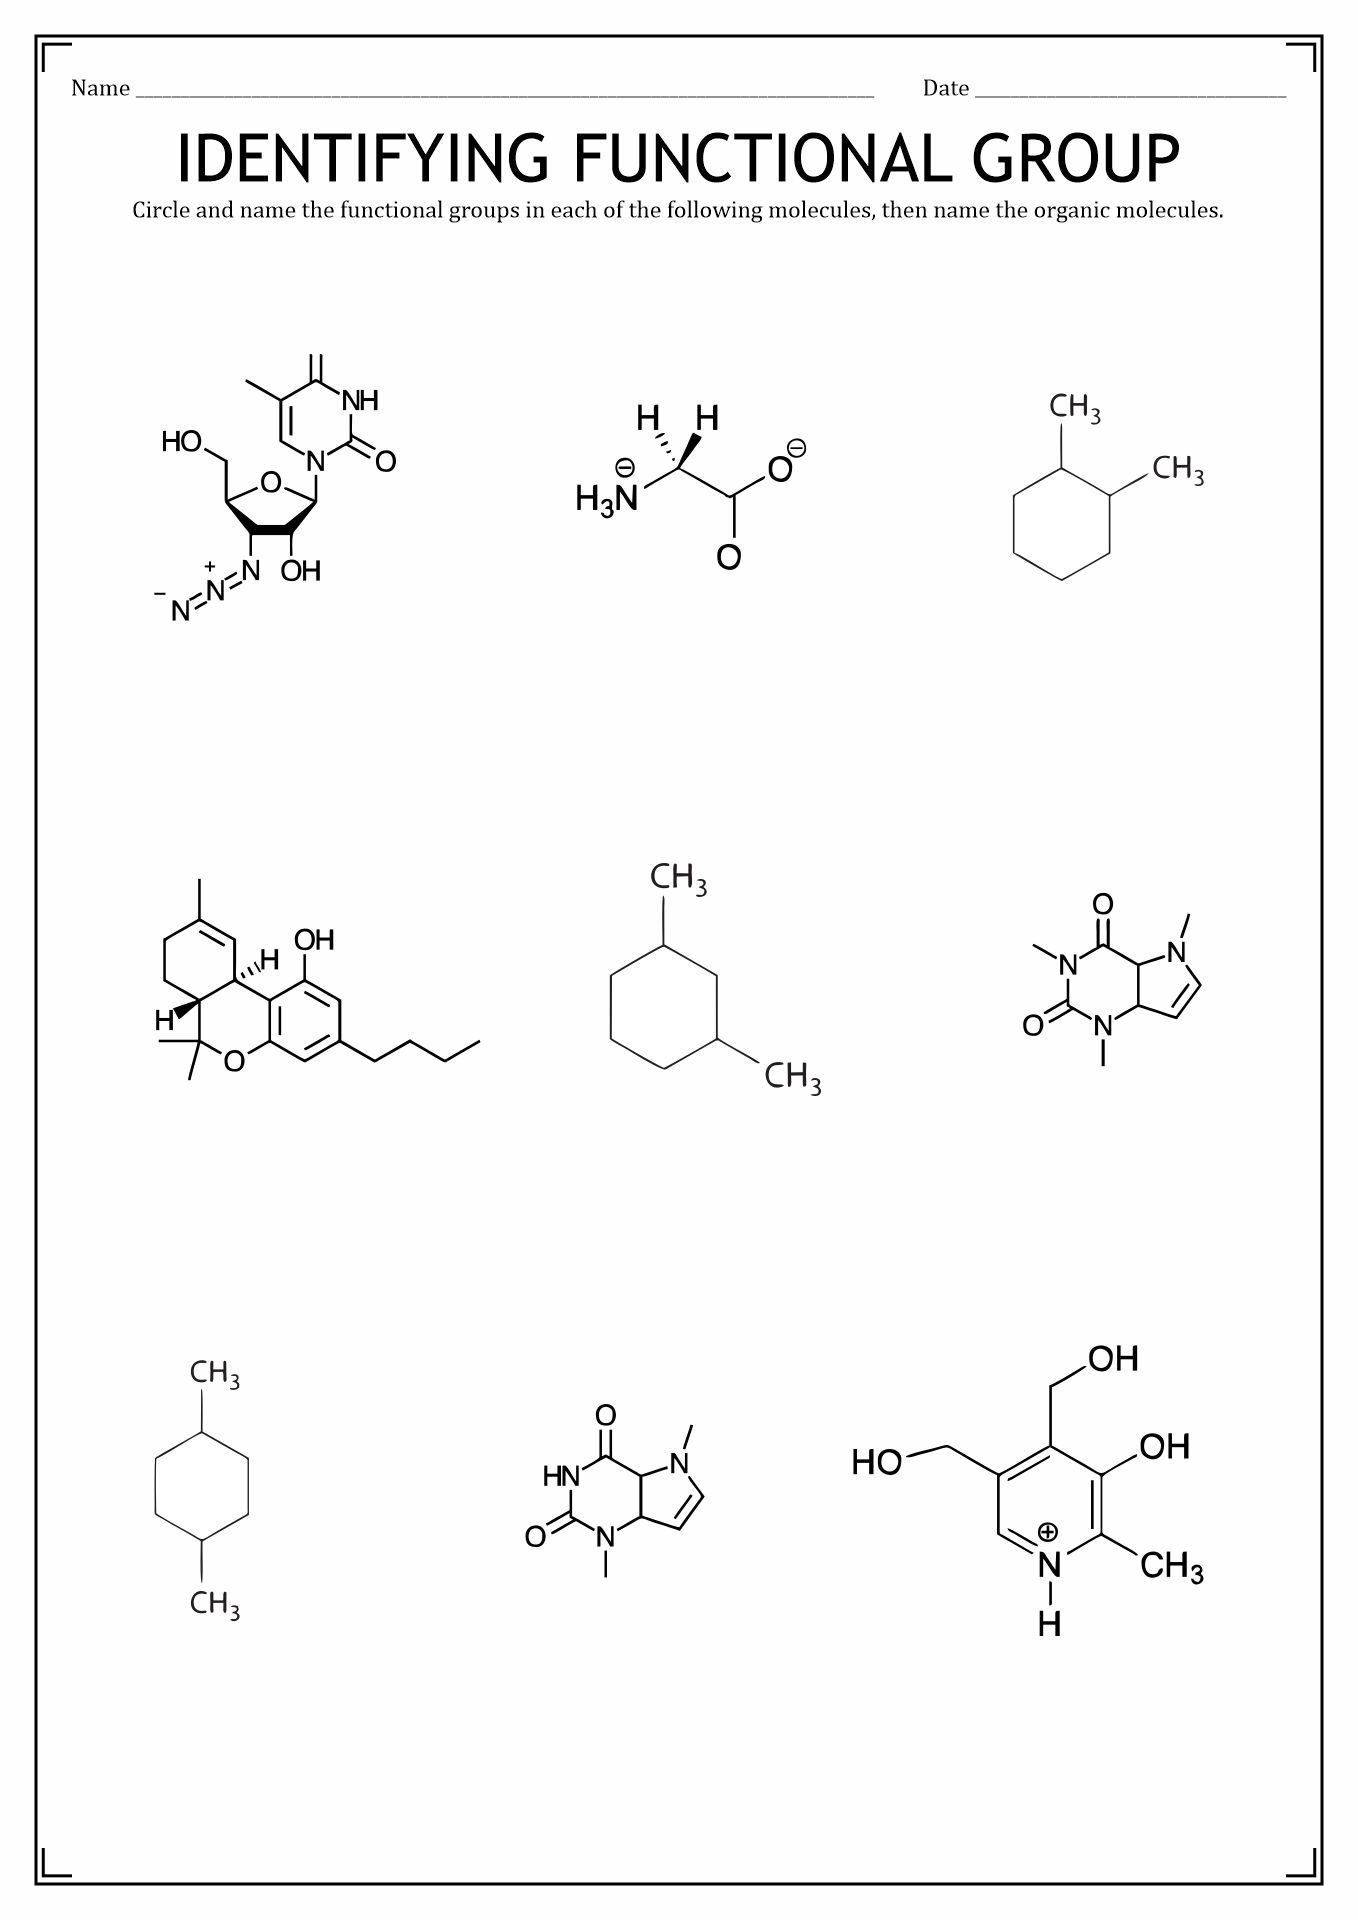 Organic Molecules Functional Groups Worksheet Image